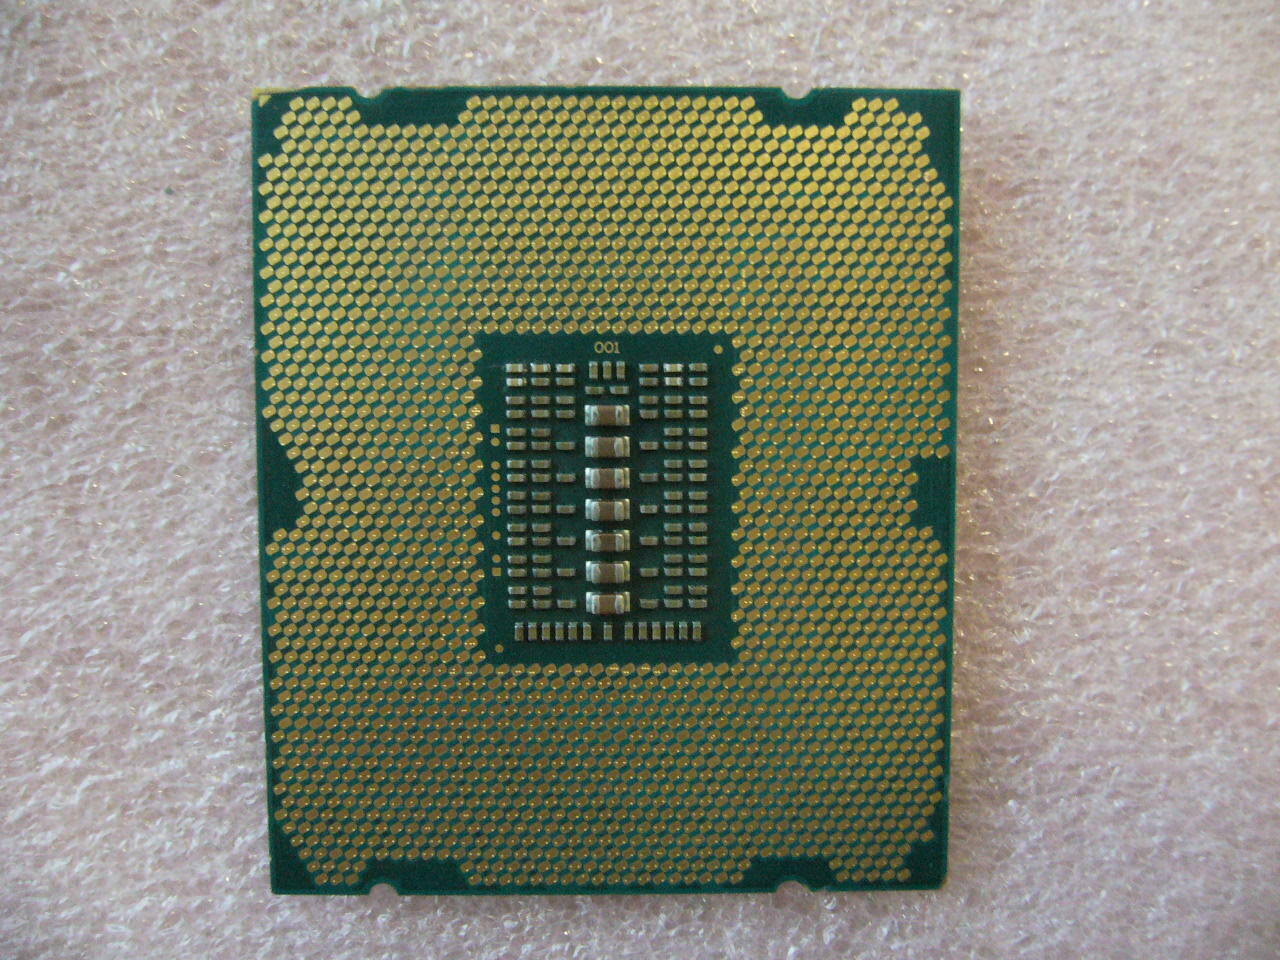 Intel Xeon CPU E5-2680 V2 10-Cores 2.8Ghz LGA2011 SR1A6